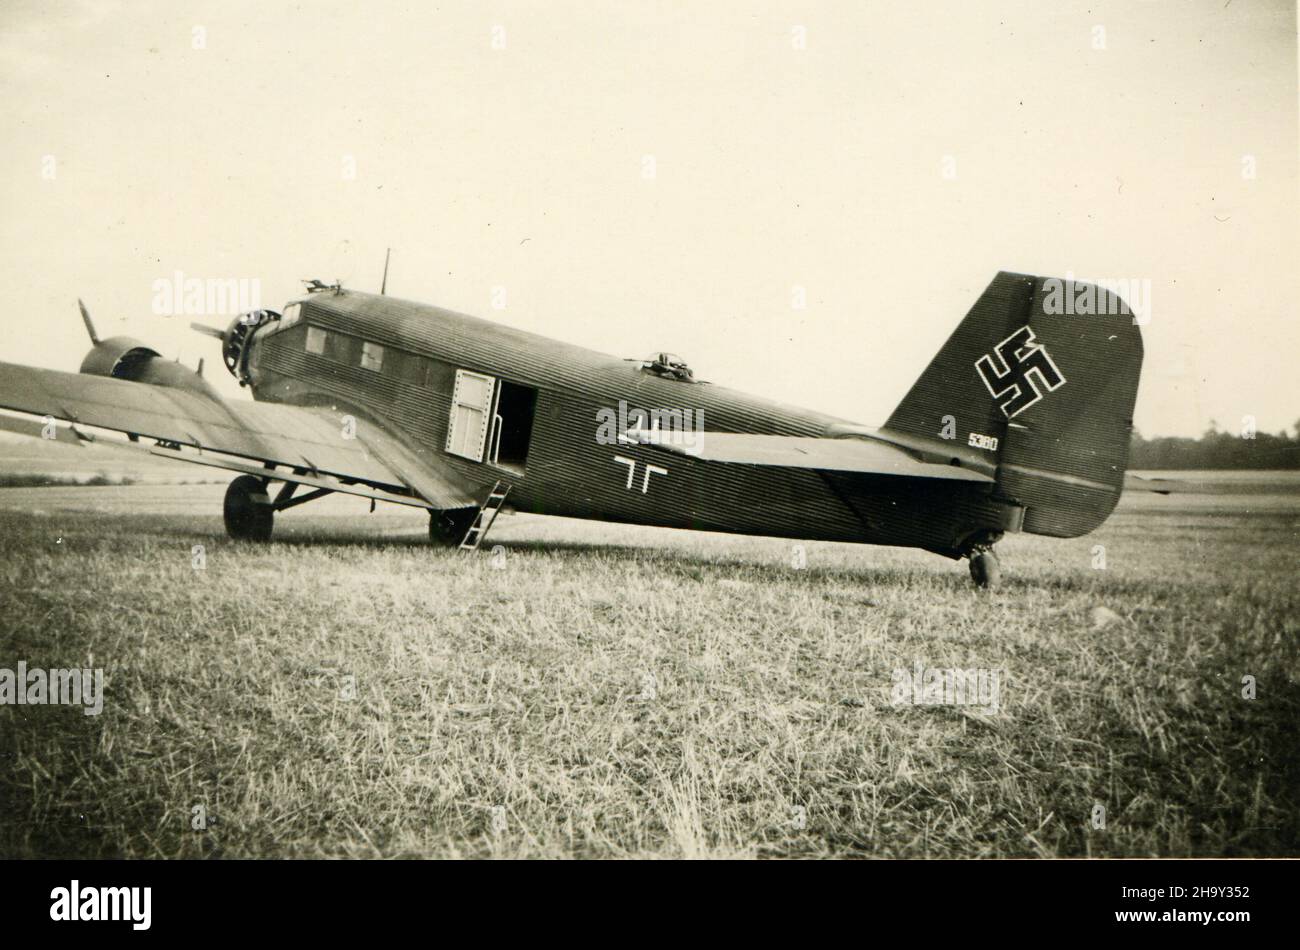 Deuxième Guerre mondiale WW2 soldats allemands envahissent la Pologne - Narol, Pologne 09/20/1939 - JU 52 avion Banque D'Images